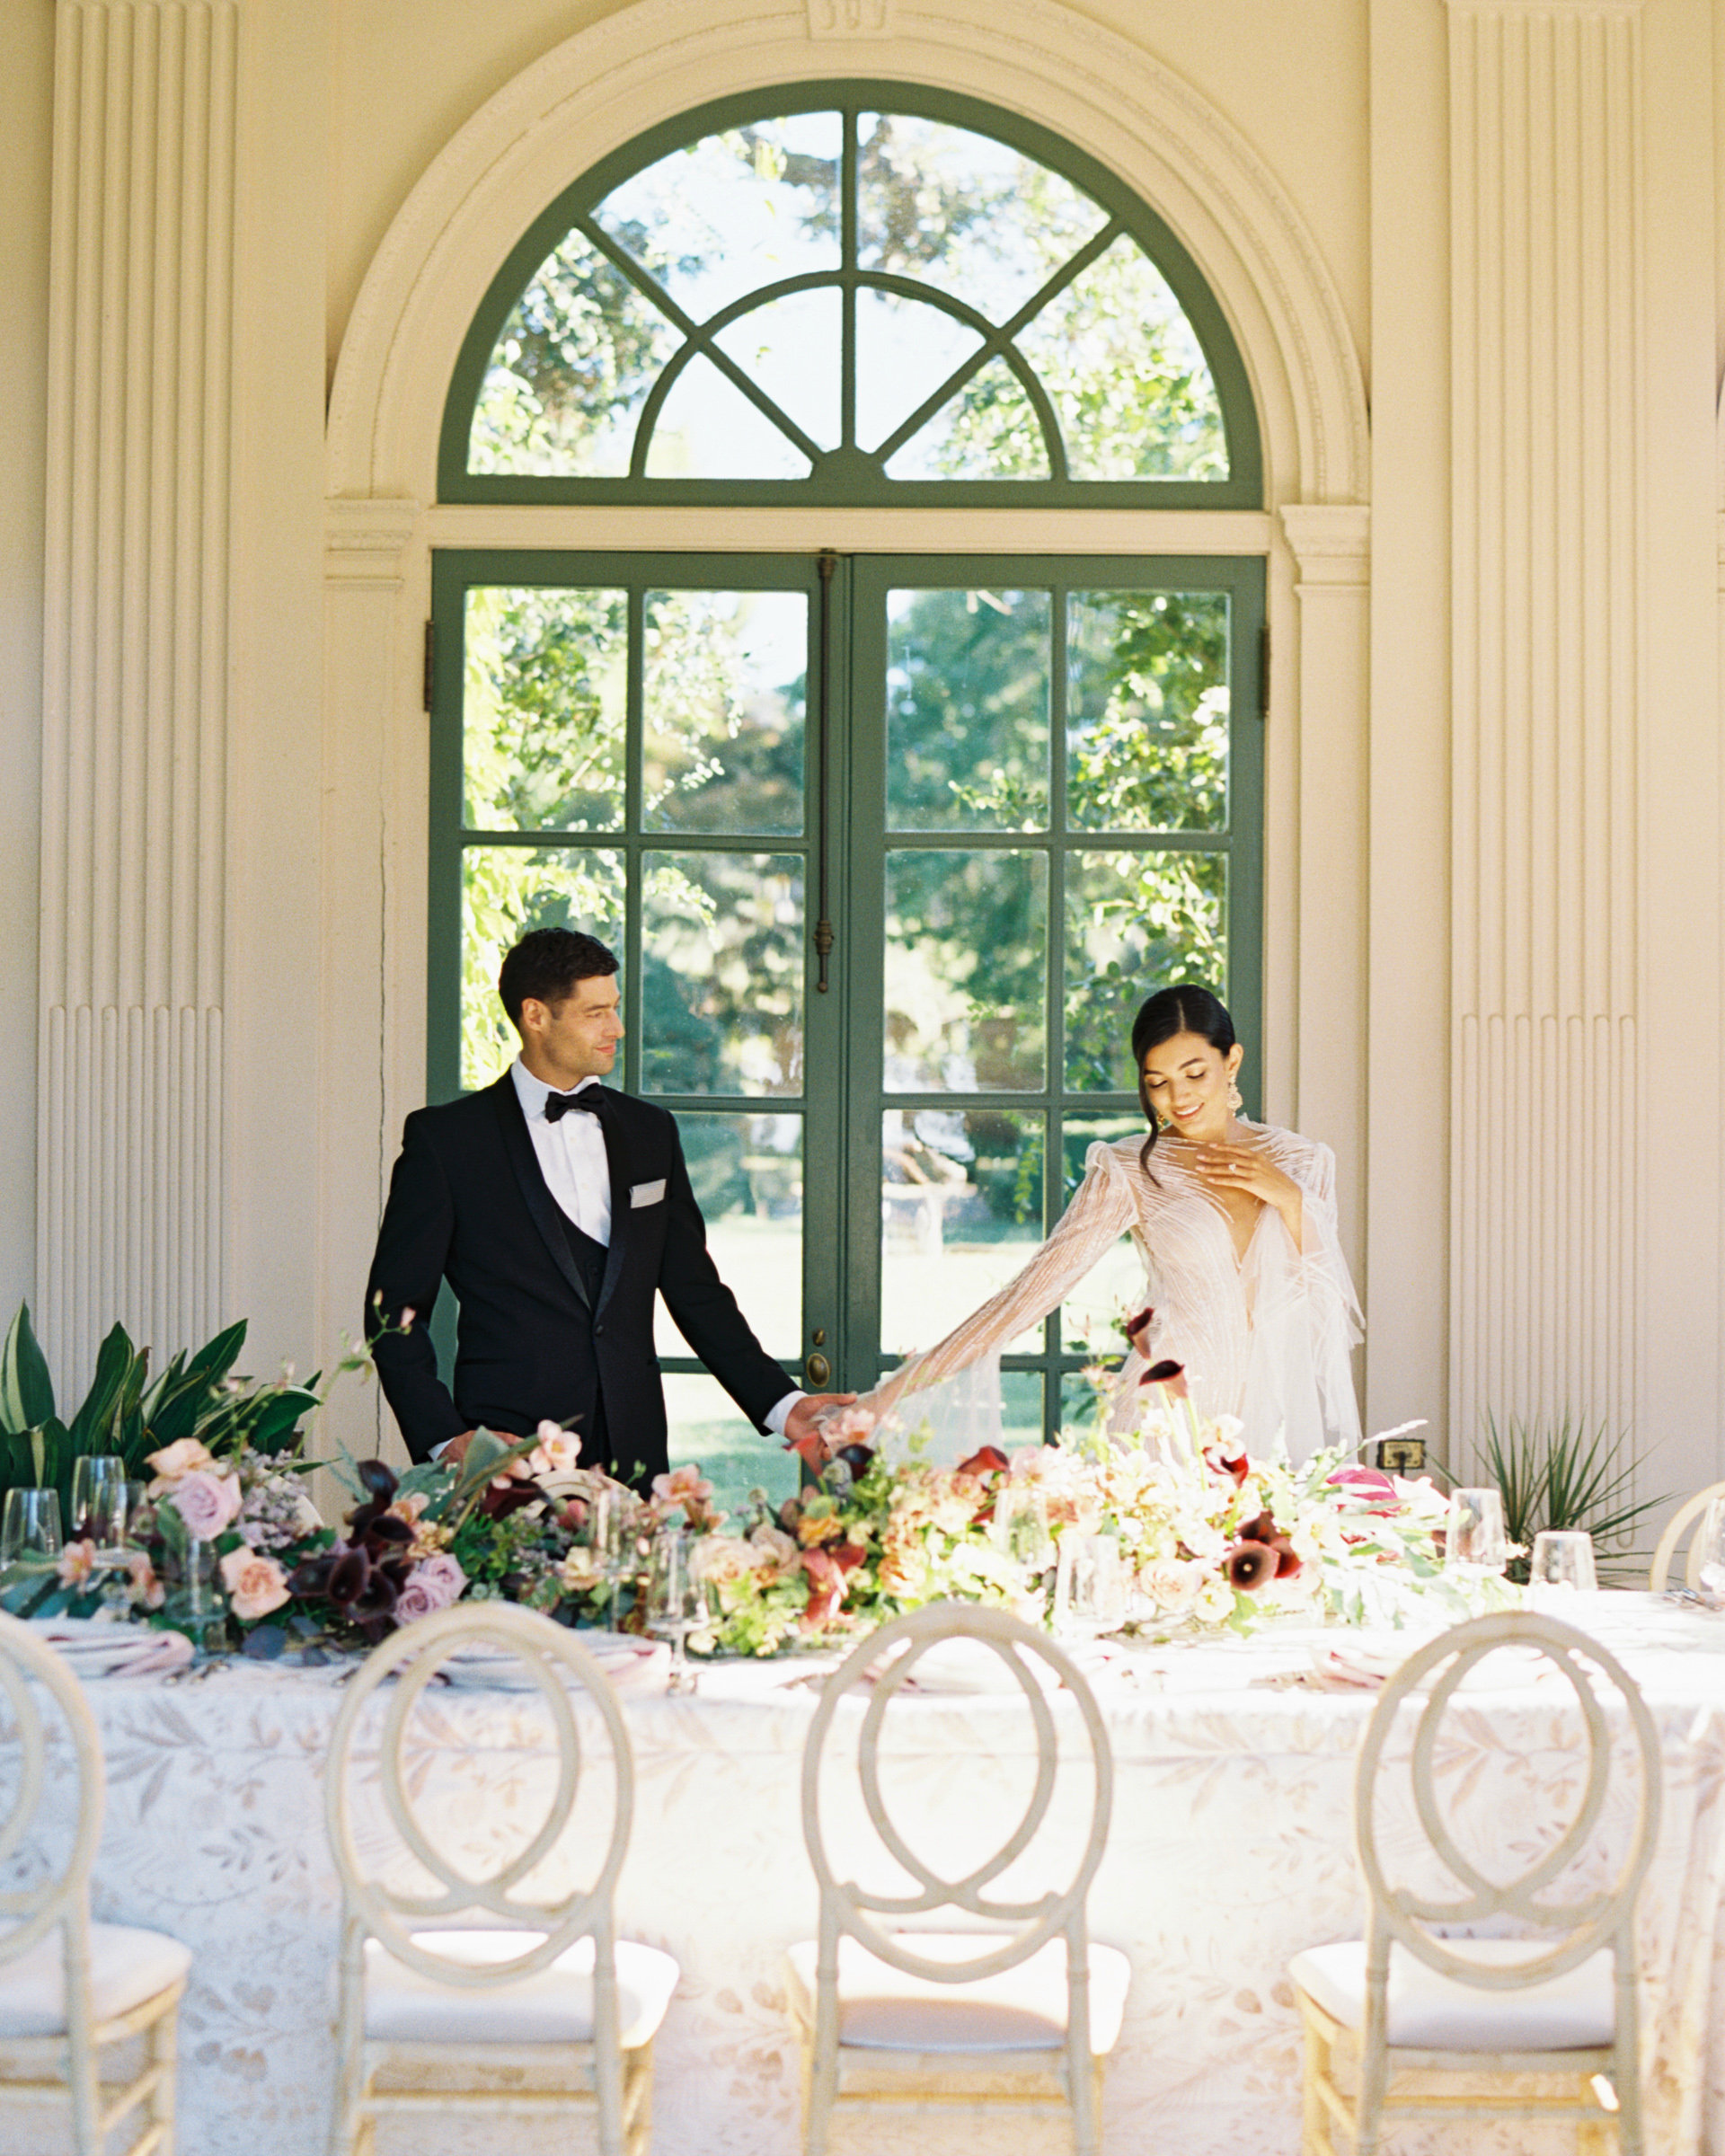 jp-liriano-photography-wedding-reception-room-reveal-filoli-garden-california-41